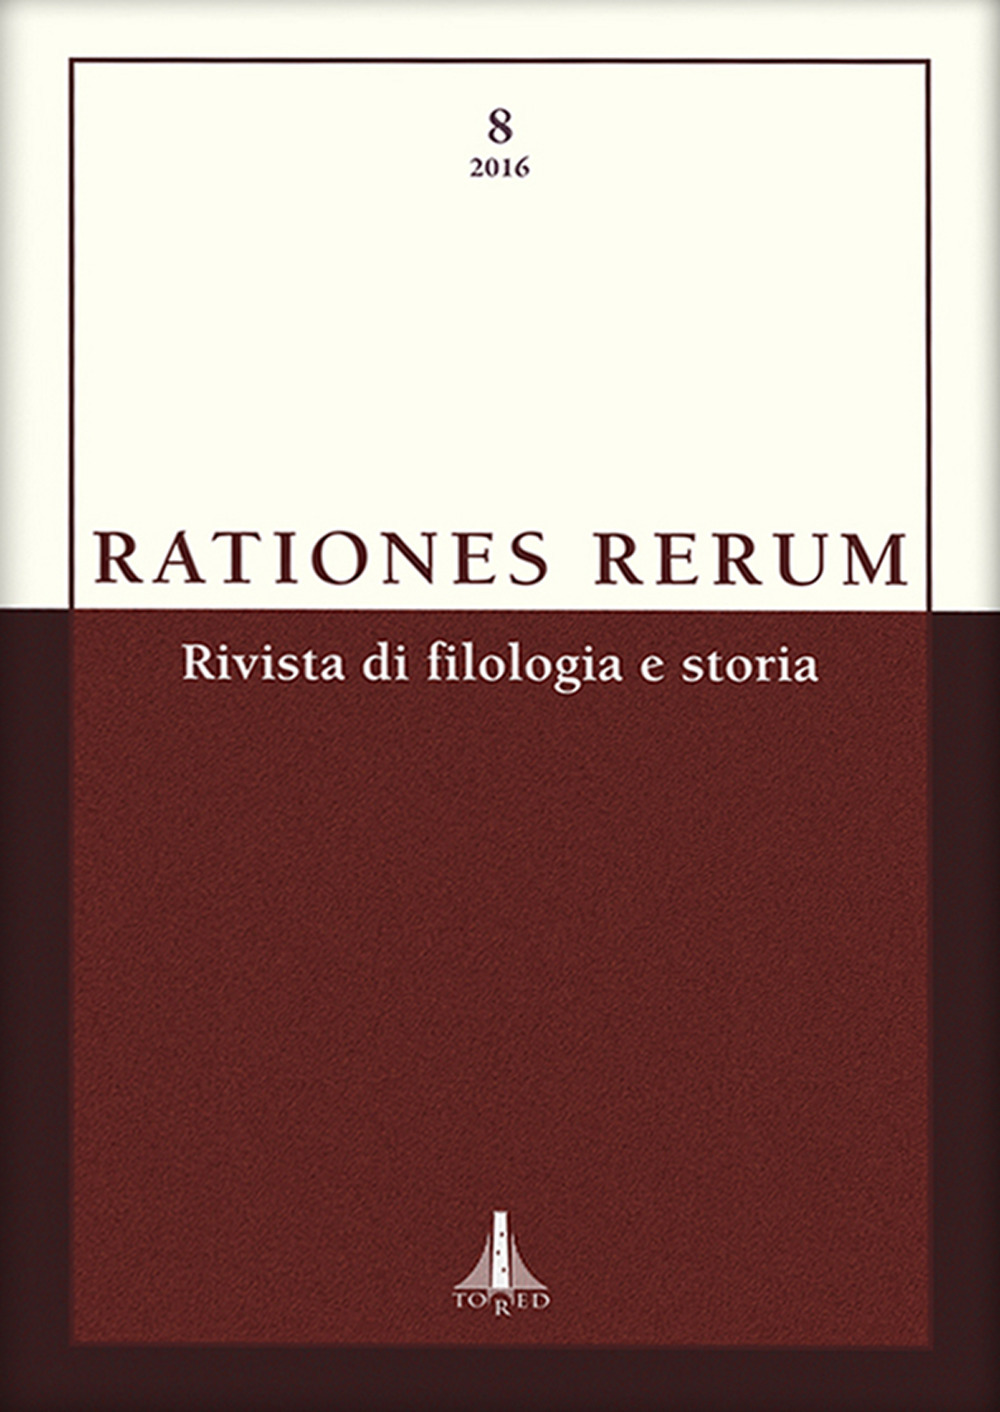 Rationes rerum. Rivista di filologia e storia. Vol. 8